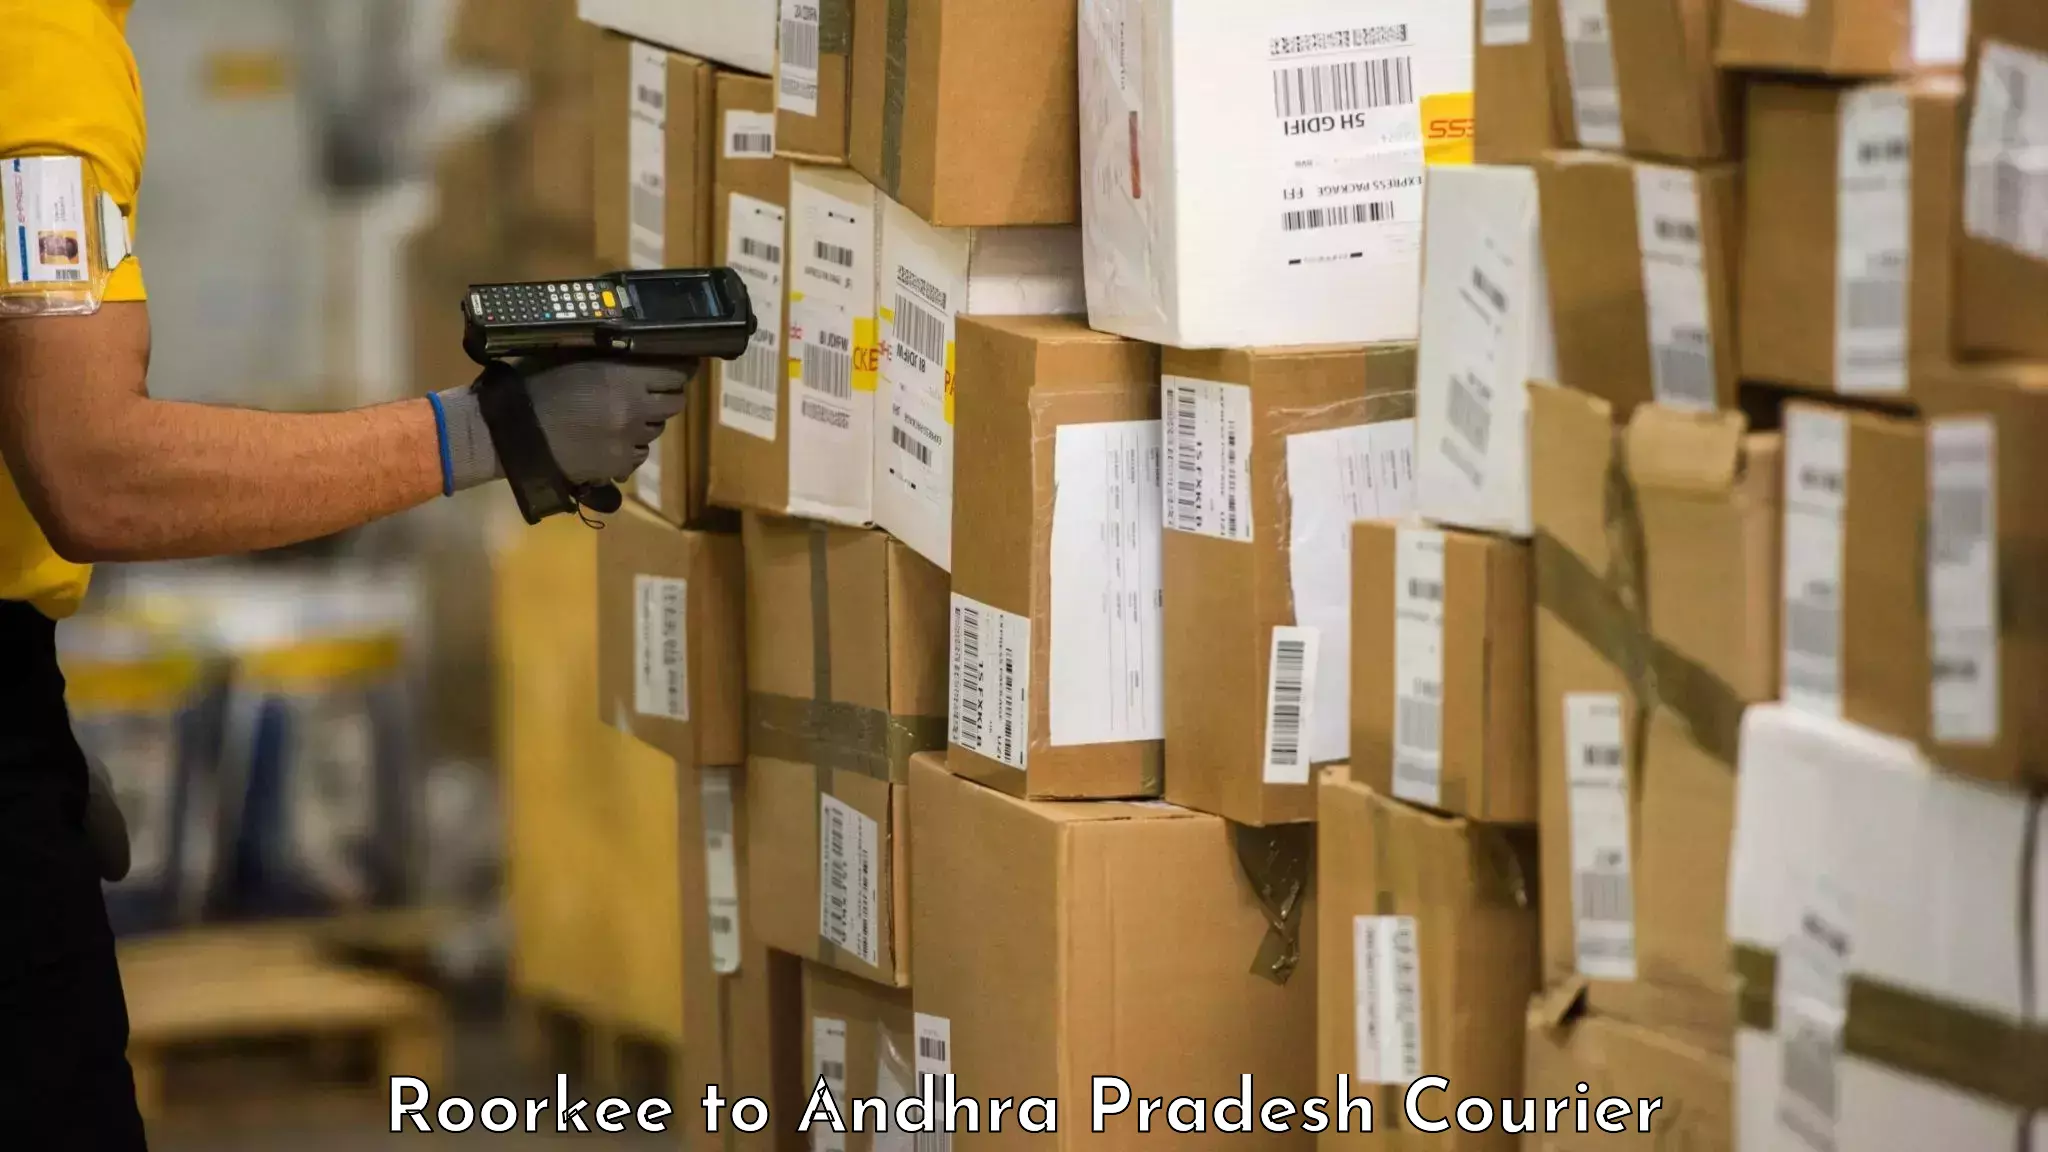 Baggage courier optimization Roorkee to Achampet Palnadu